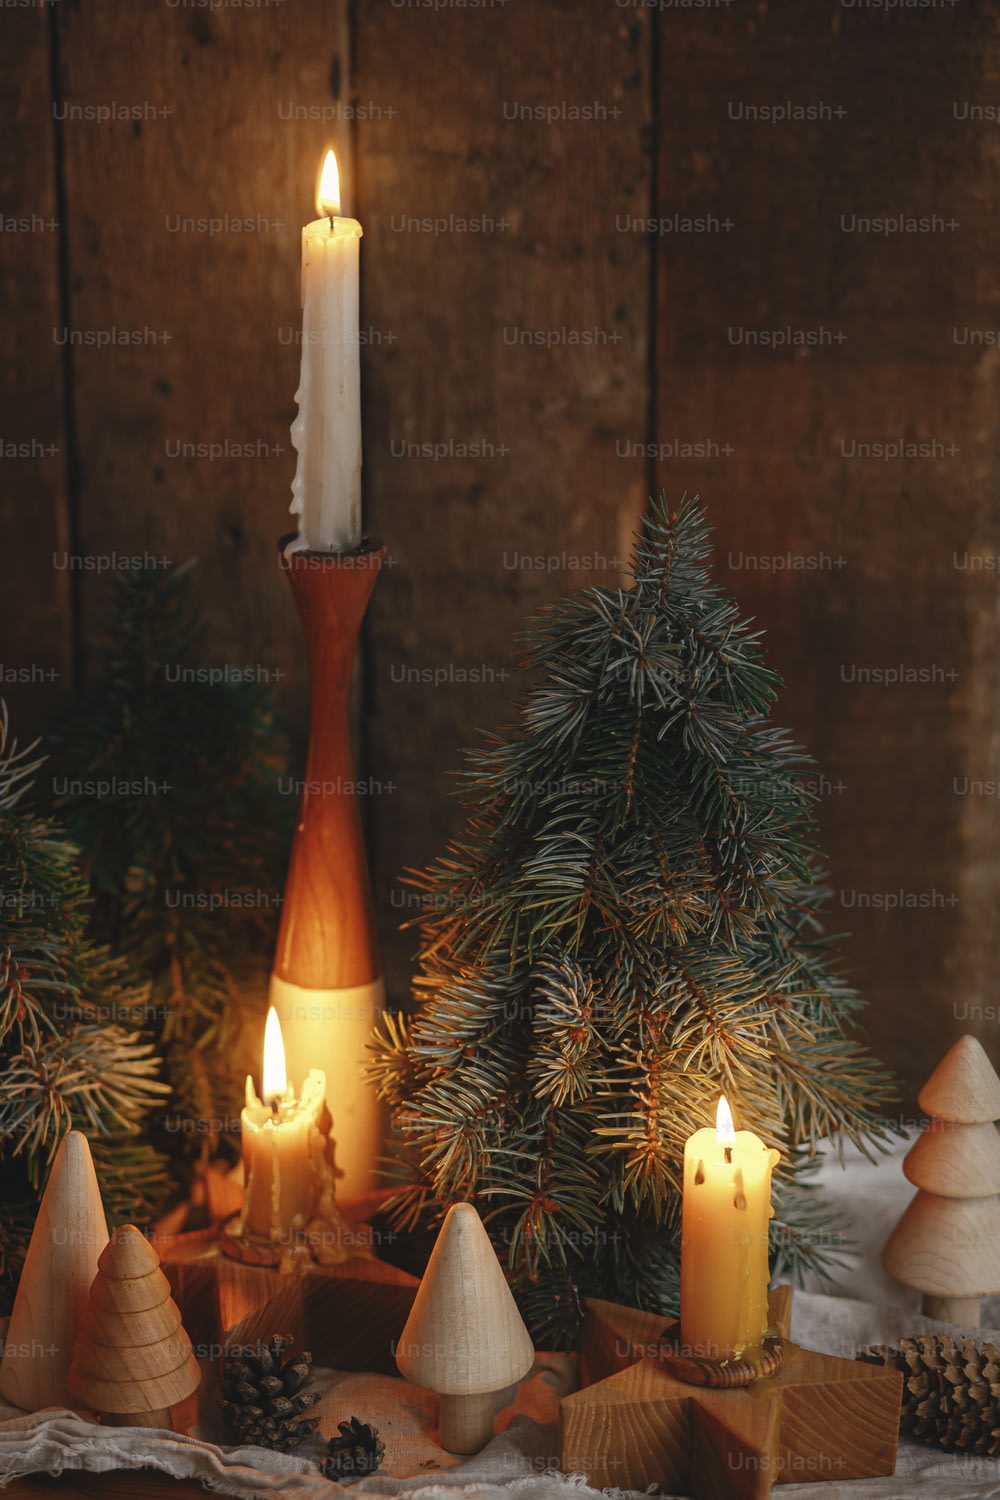 Adviento de Navidad. Elegantes velas ardientes de navidad, pinos y conos decoraciones modernas sobre fondo rústico de madera antigua en la habitación escandinava de la noche. Momento atmosférico